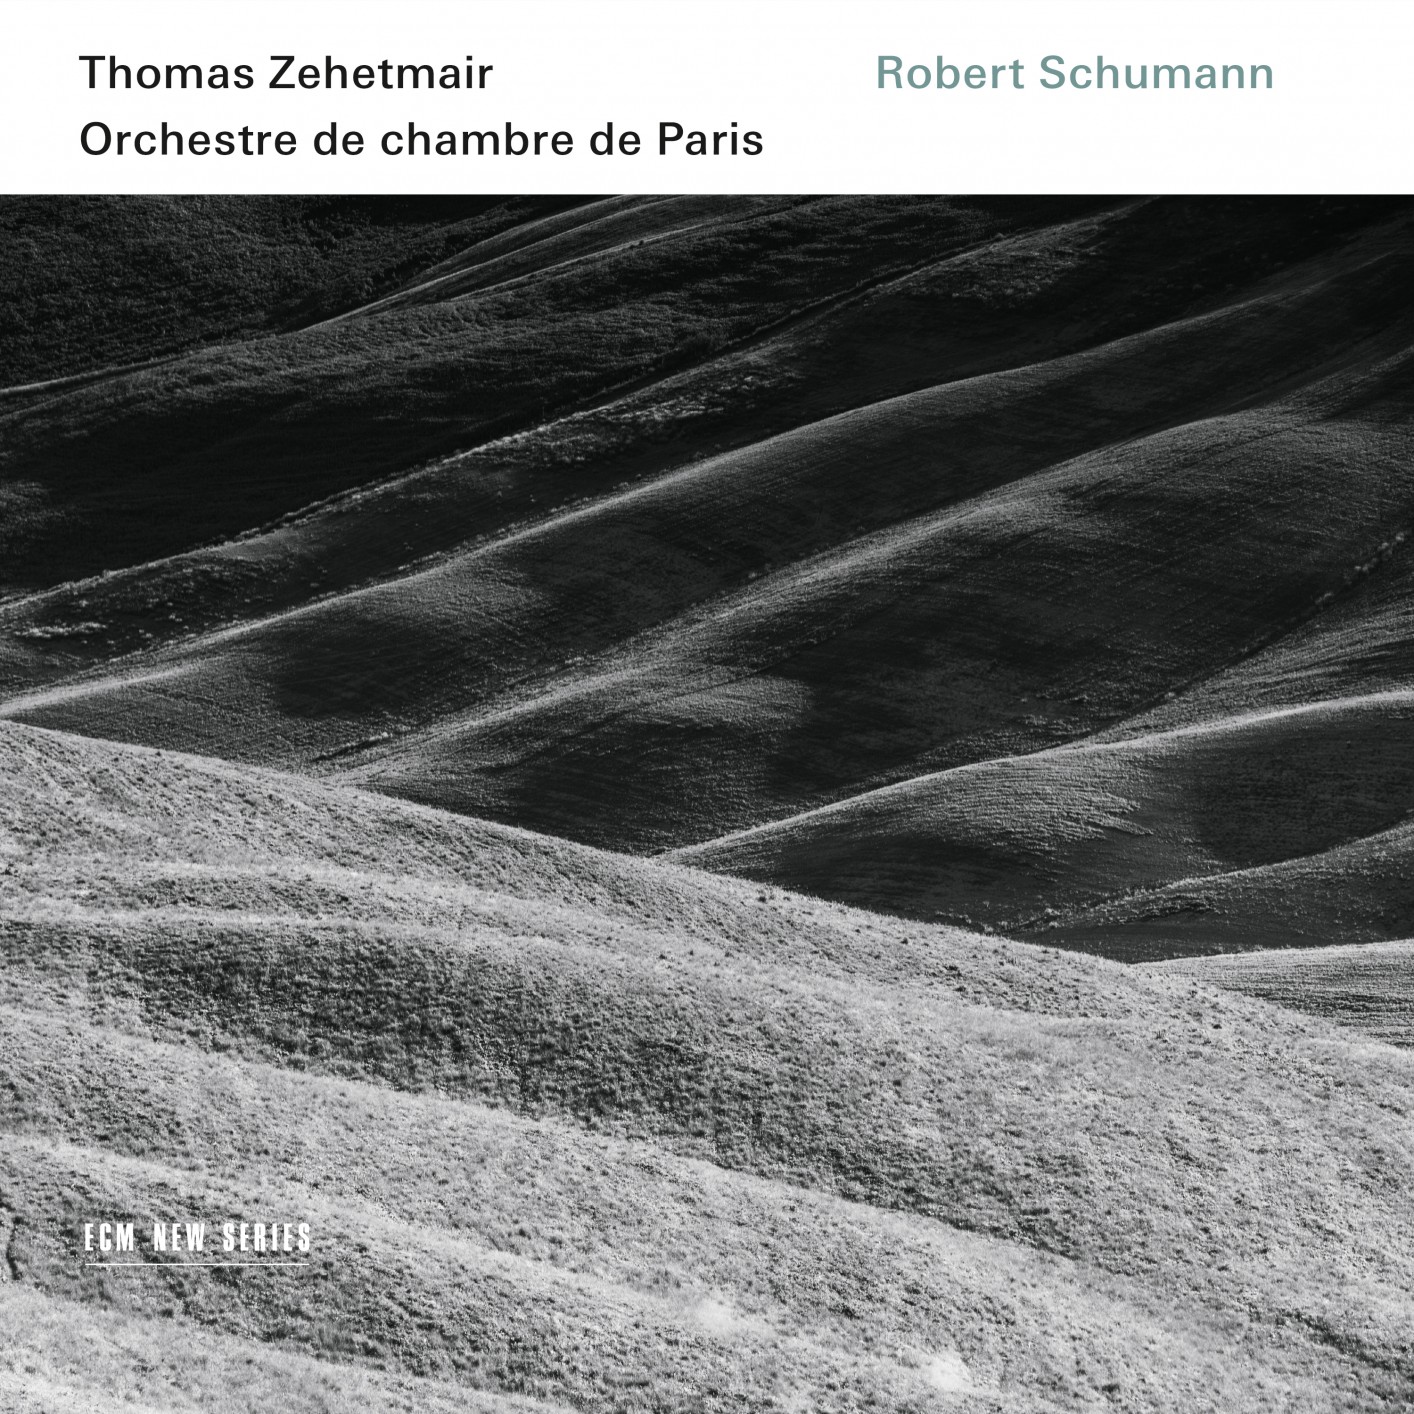 Thomas Zehetmair & Orchestre de chambre de Paris - Robert Schumann (2016) [FLAC 24bit/96kHz]